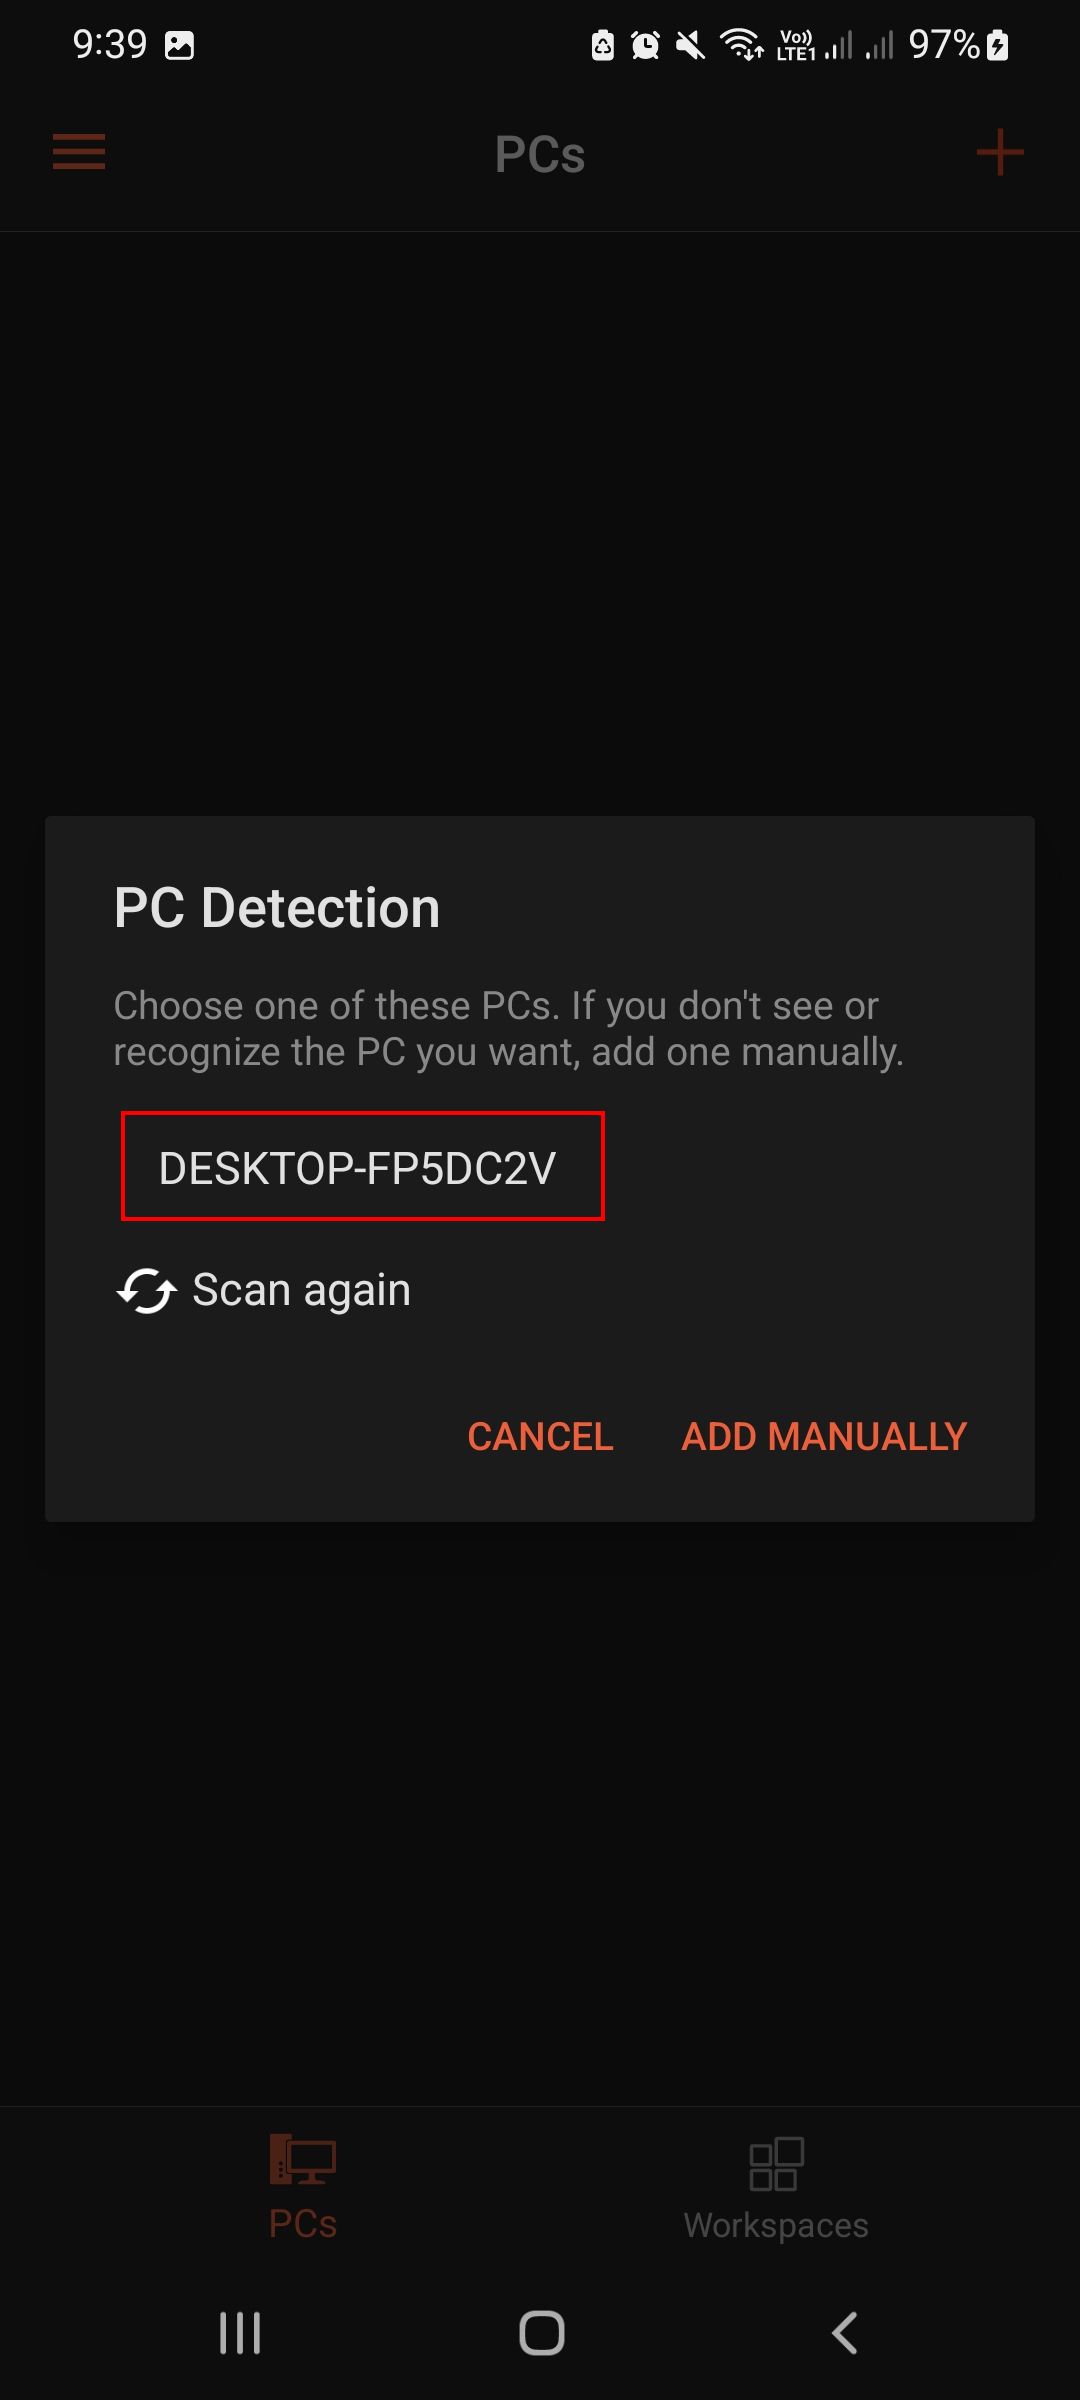 Select PC